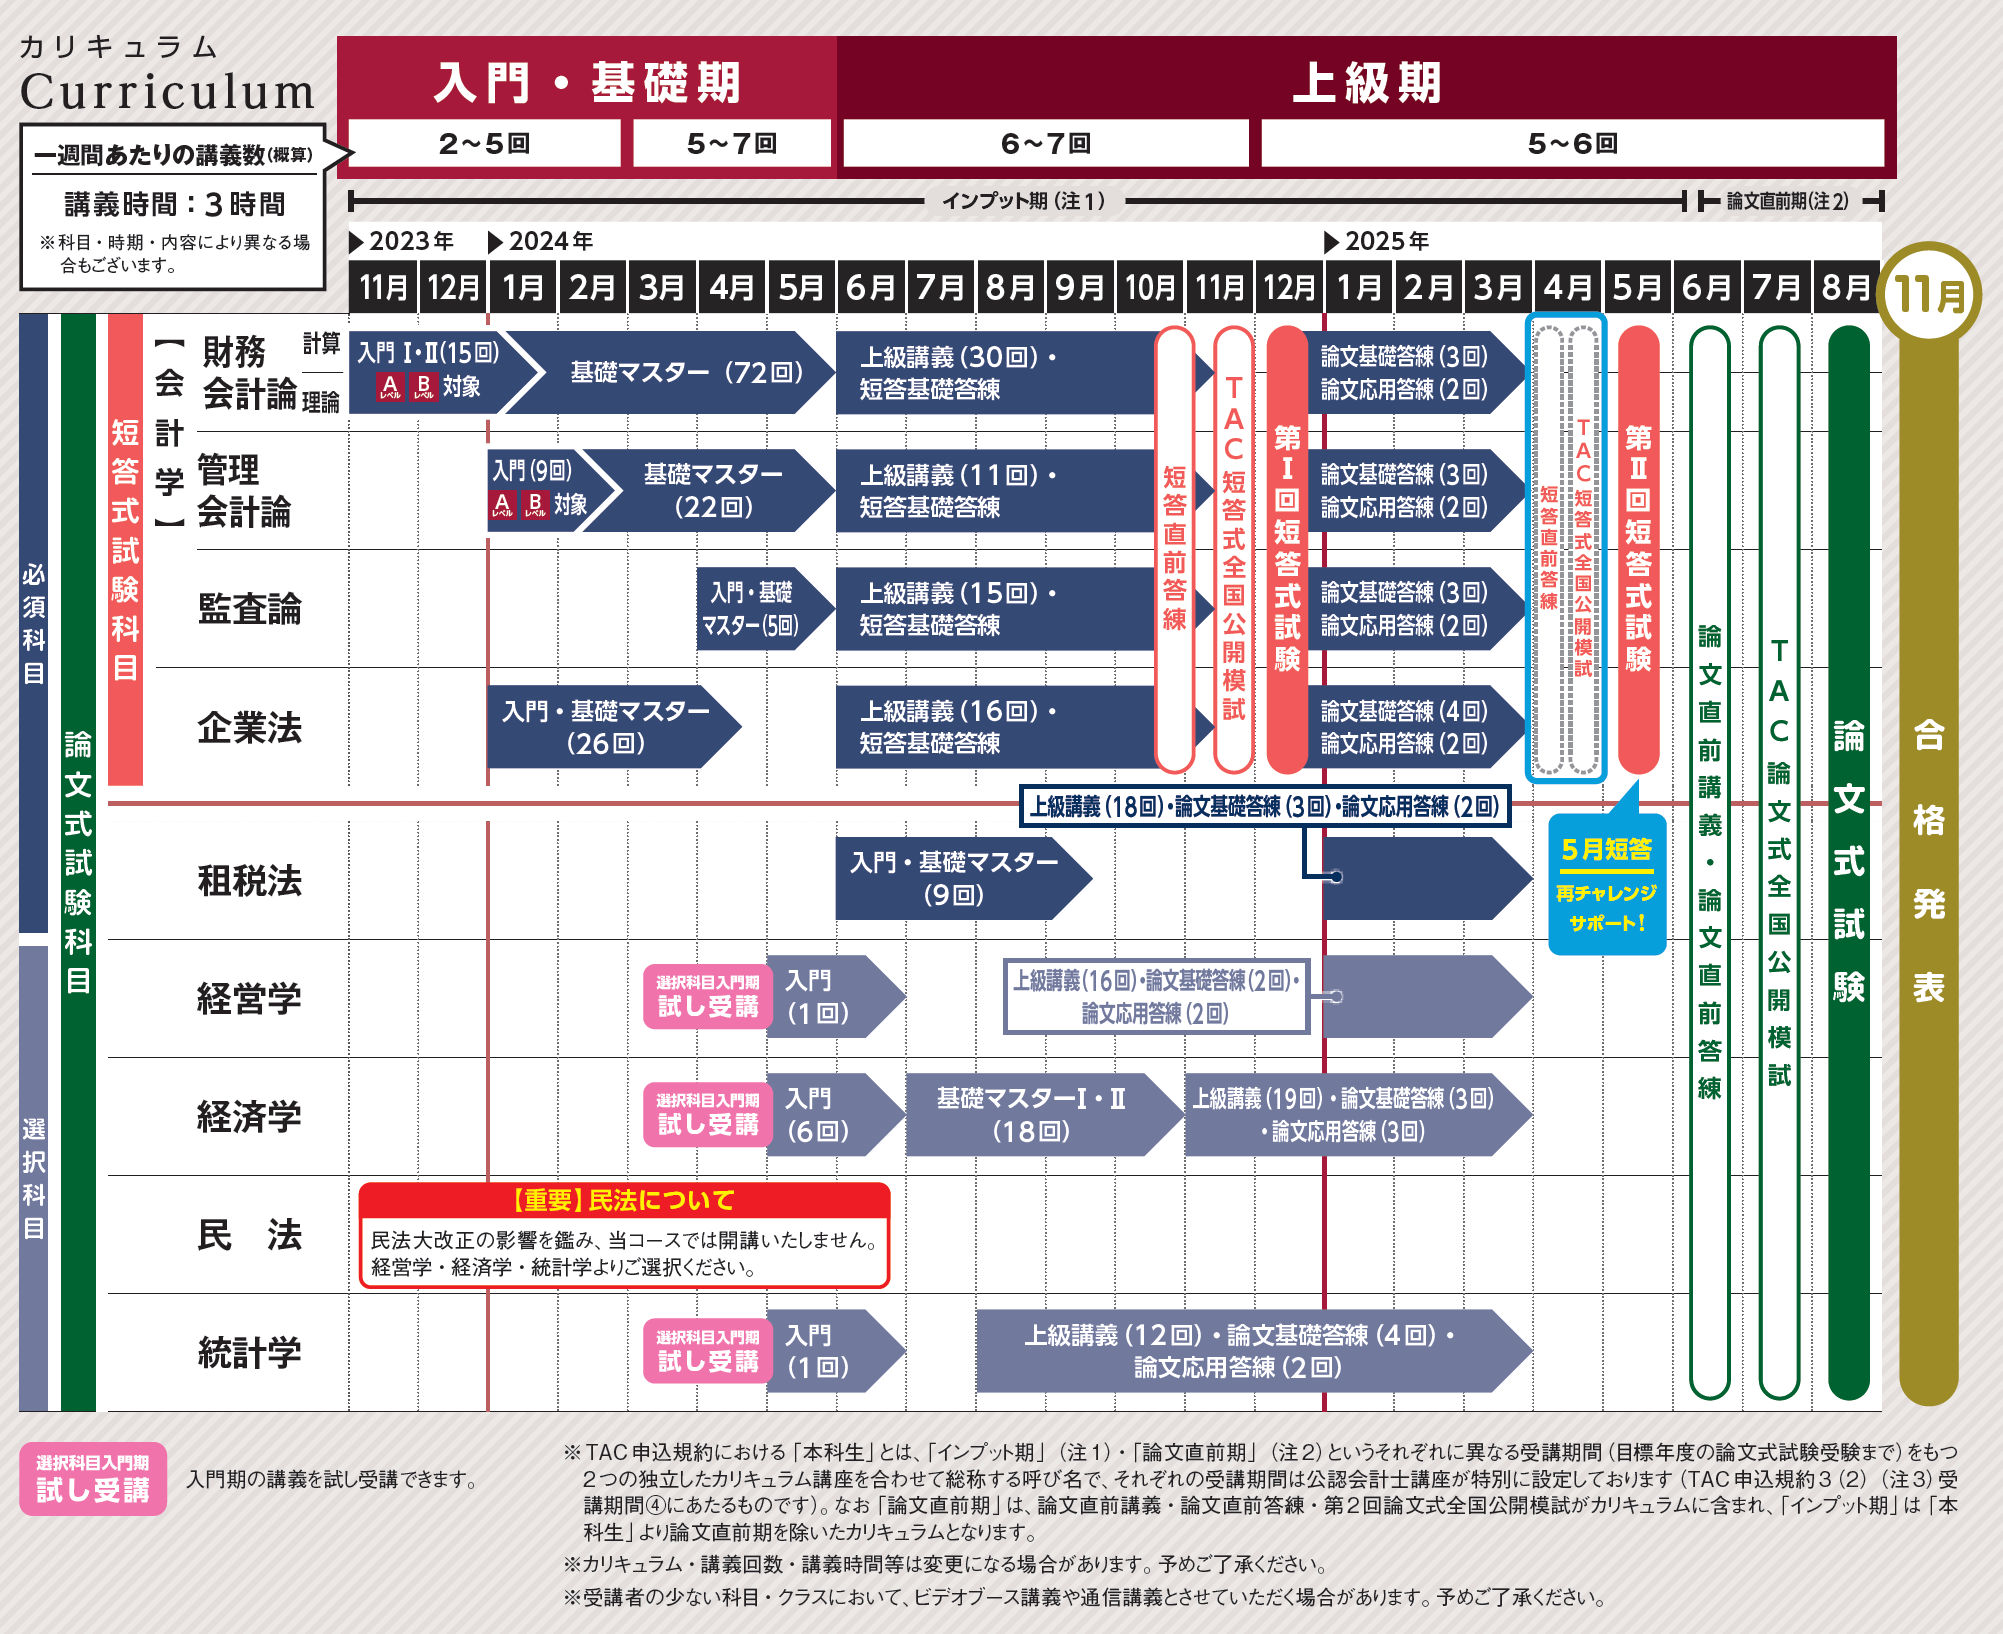 【租税法】TAC公認会計士 2023【未使用】